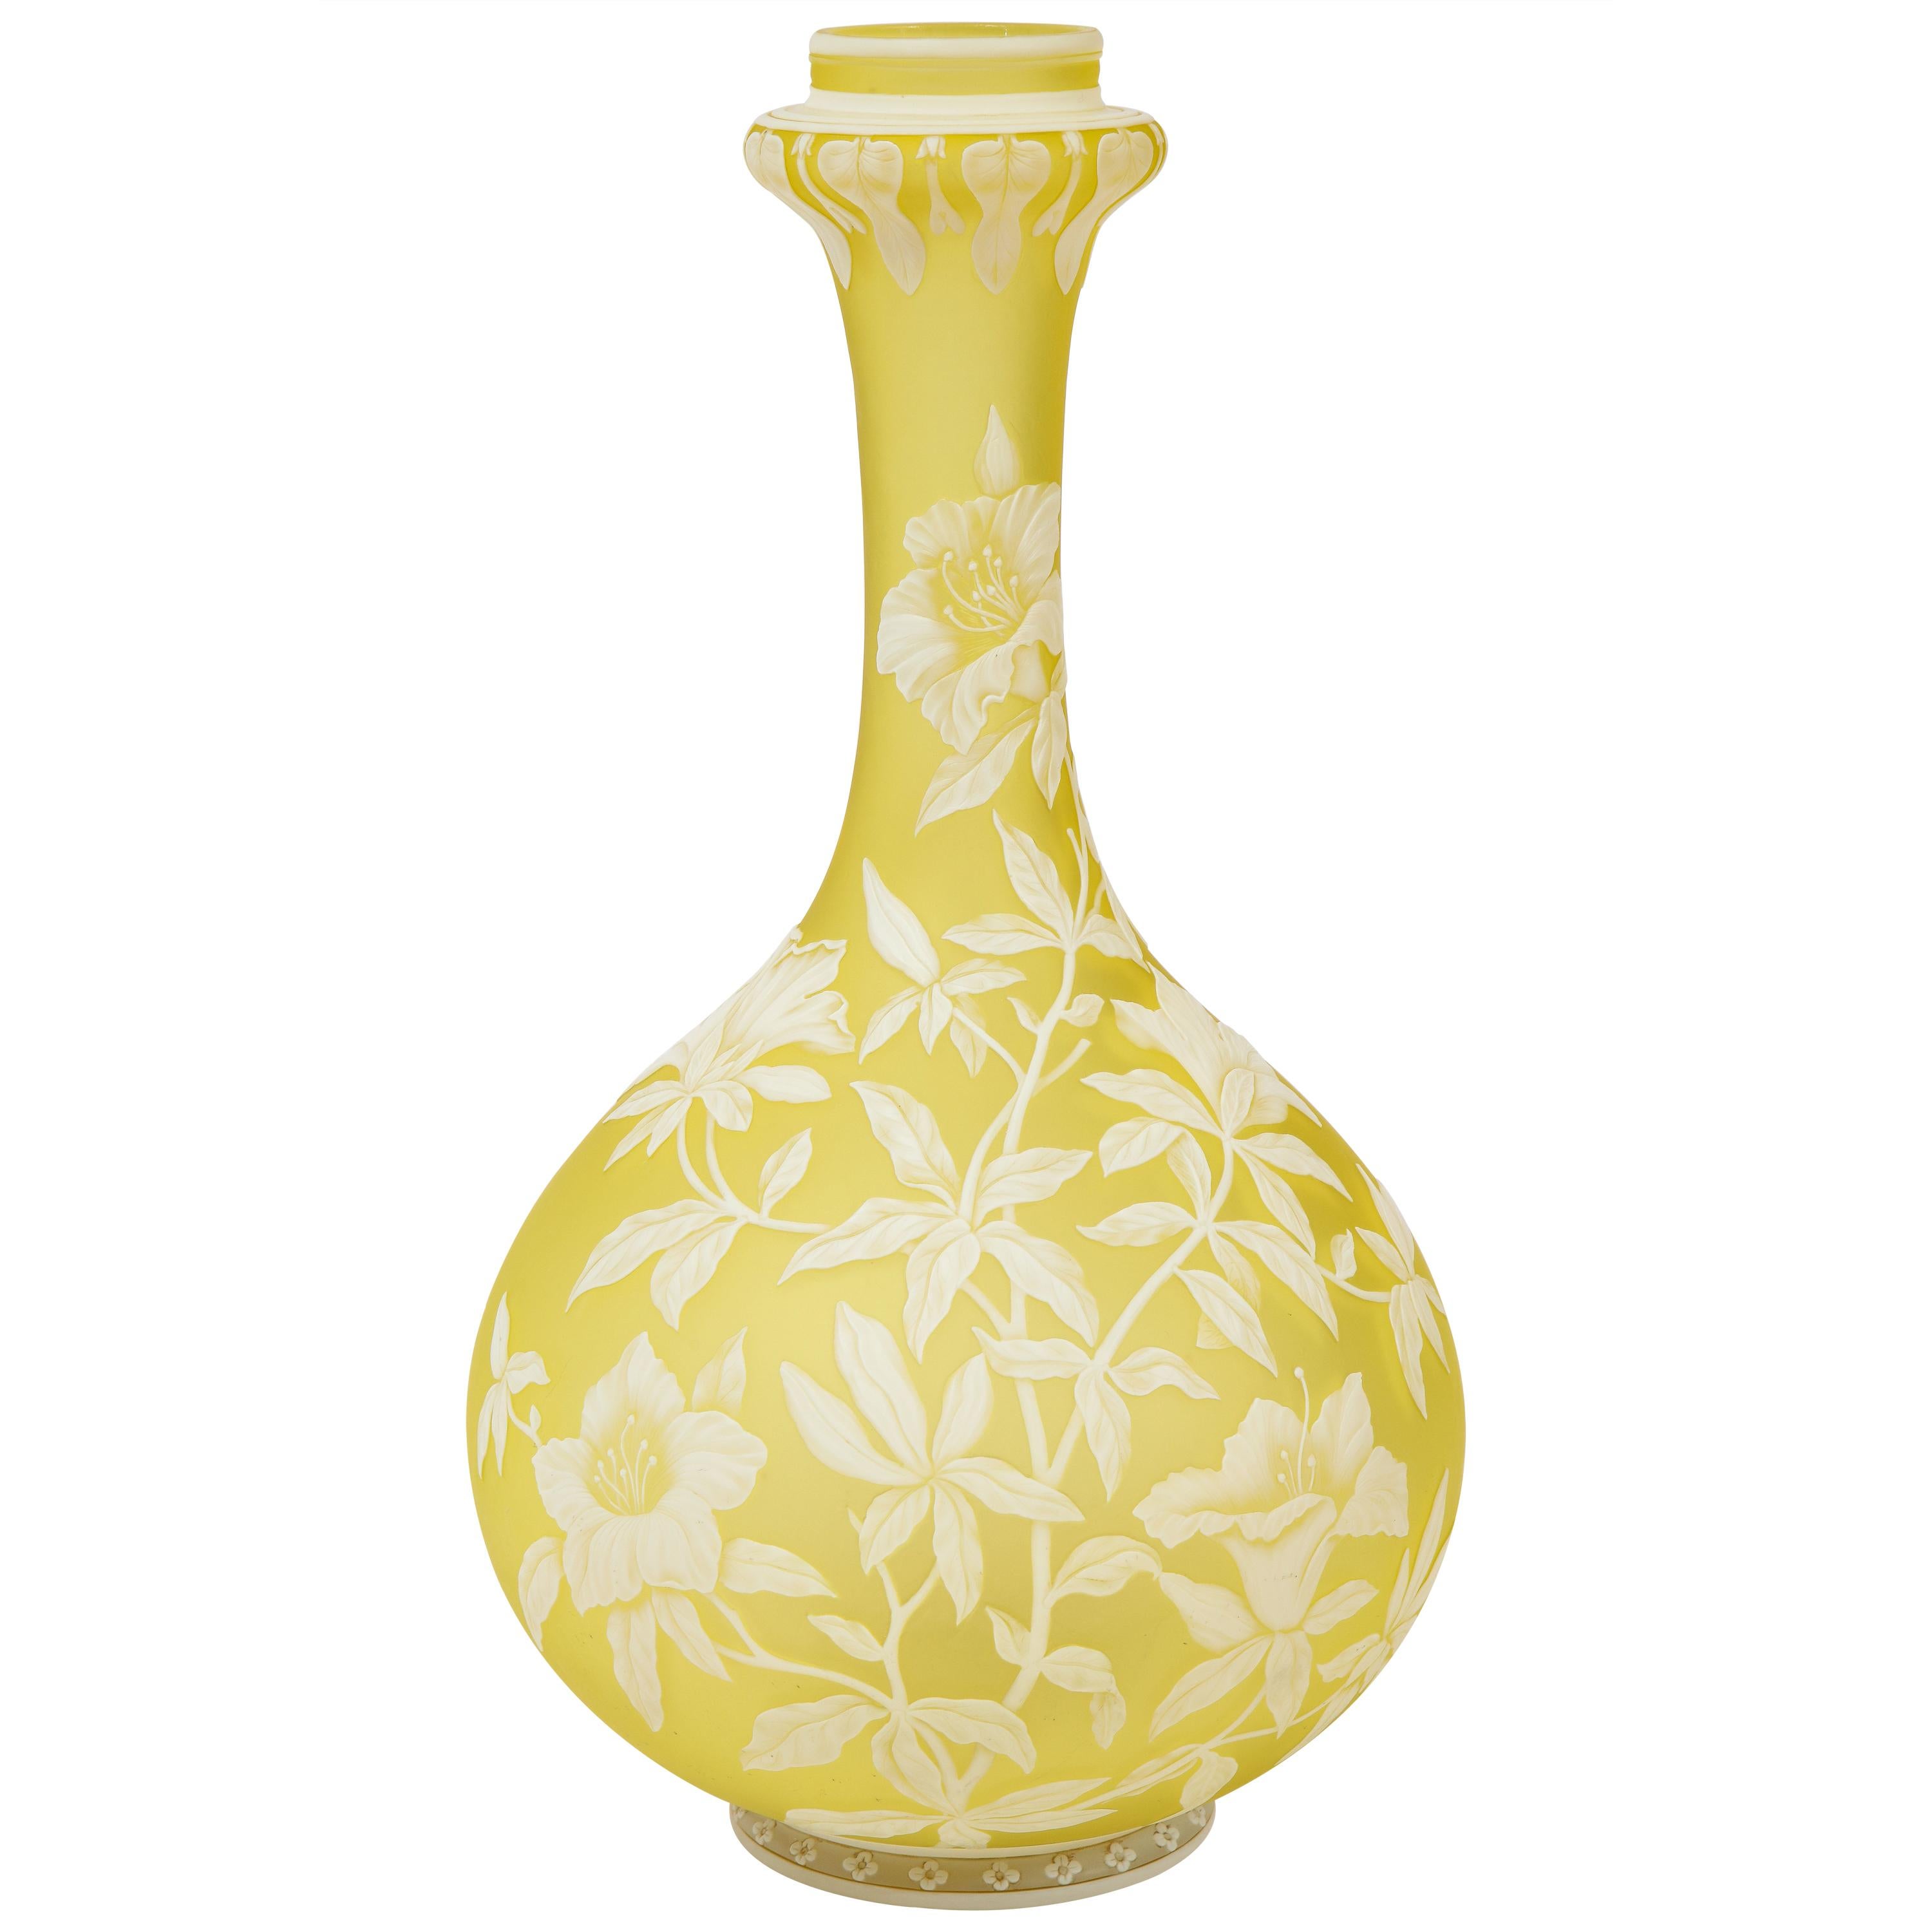 Thomas Webb & Sons Double Overlaid White Over Yellow Etched & Acid Washed Vase